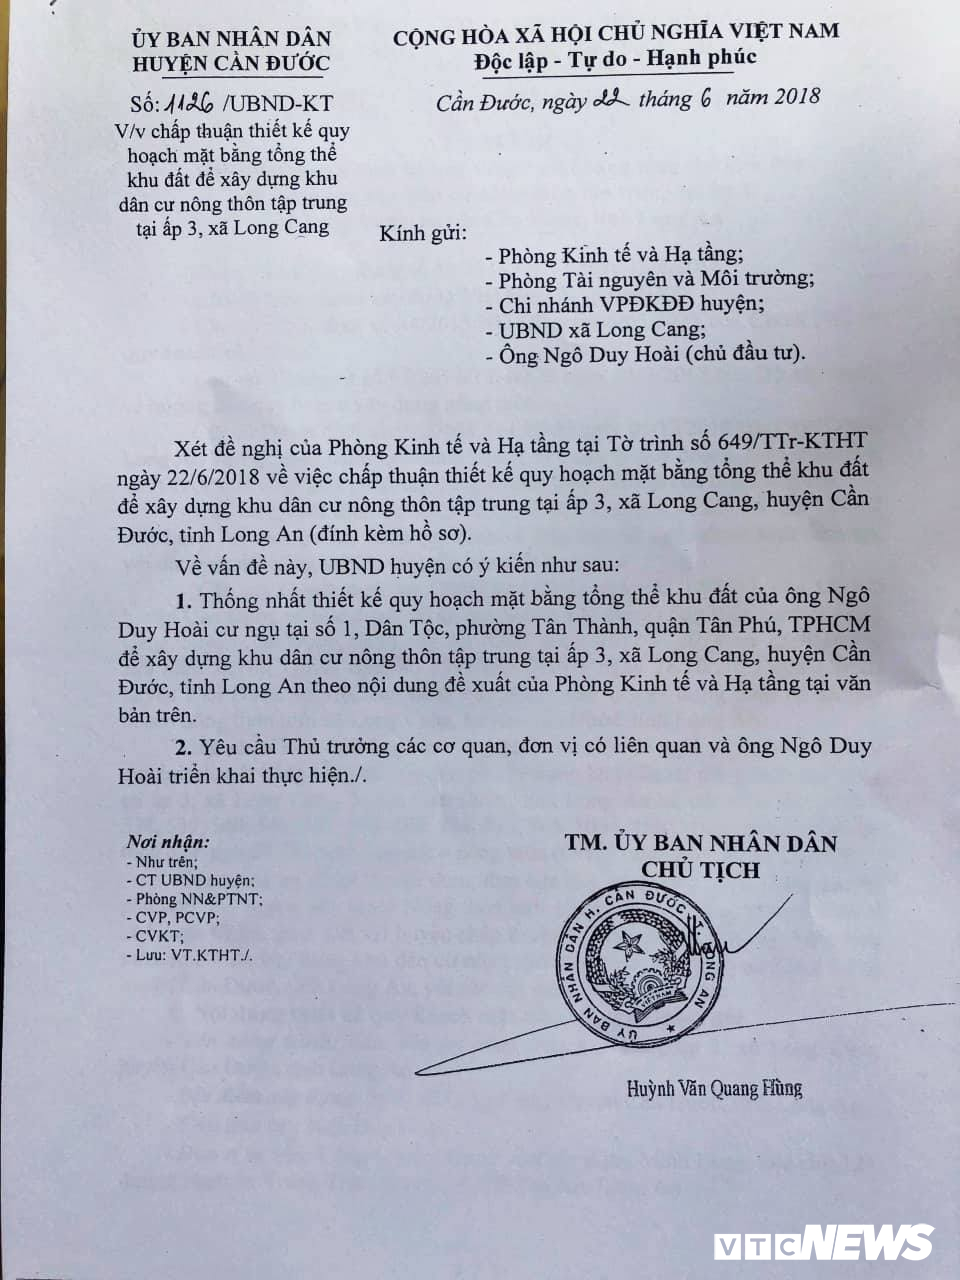 Văn bản phê duyệt mặt bằng tổng thể được UBND huyện Cần Đước cấp cho dự án khu dân cư nông thôn tập trung ấp 3, xã Long Cang (tên thương mại là Long Cang Riverside).